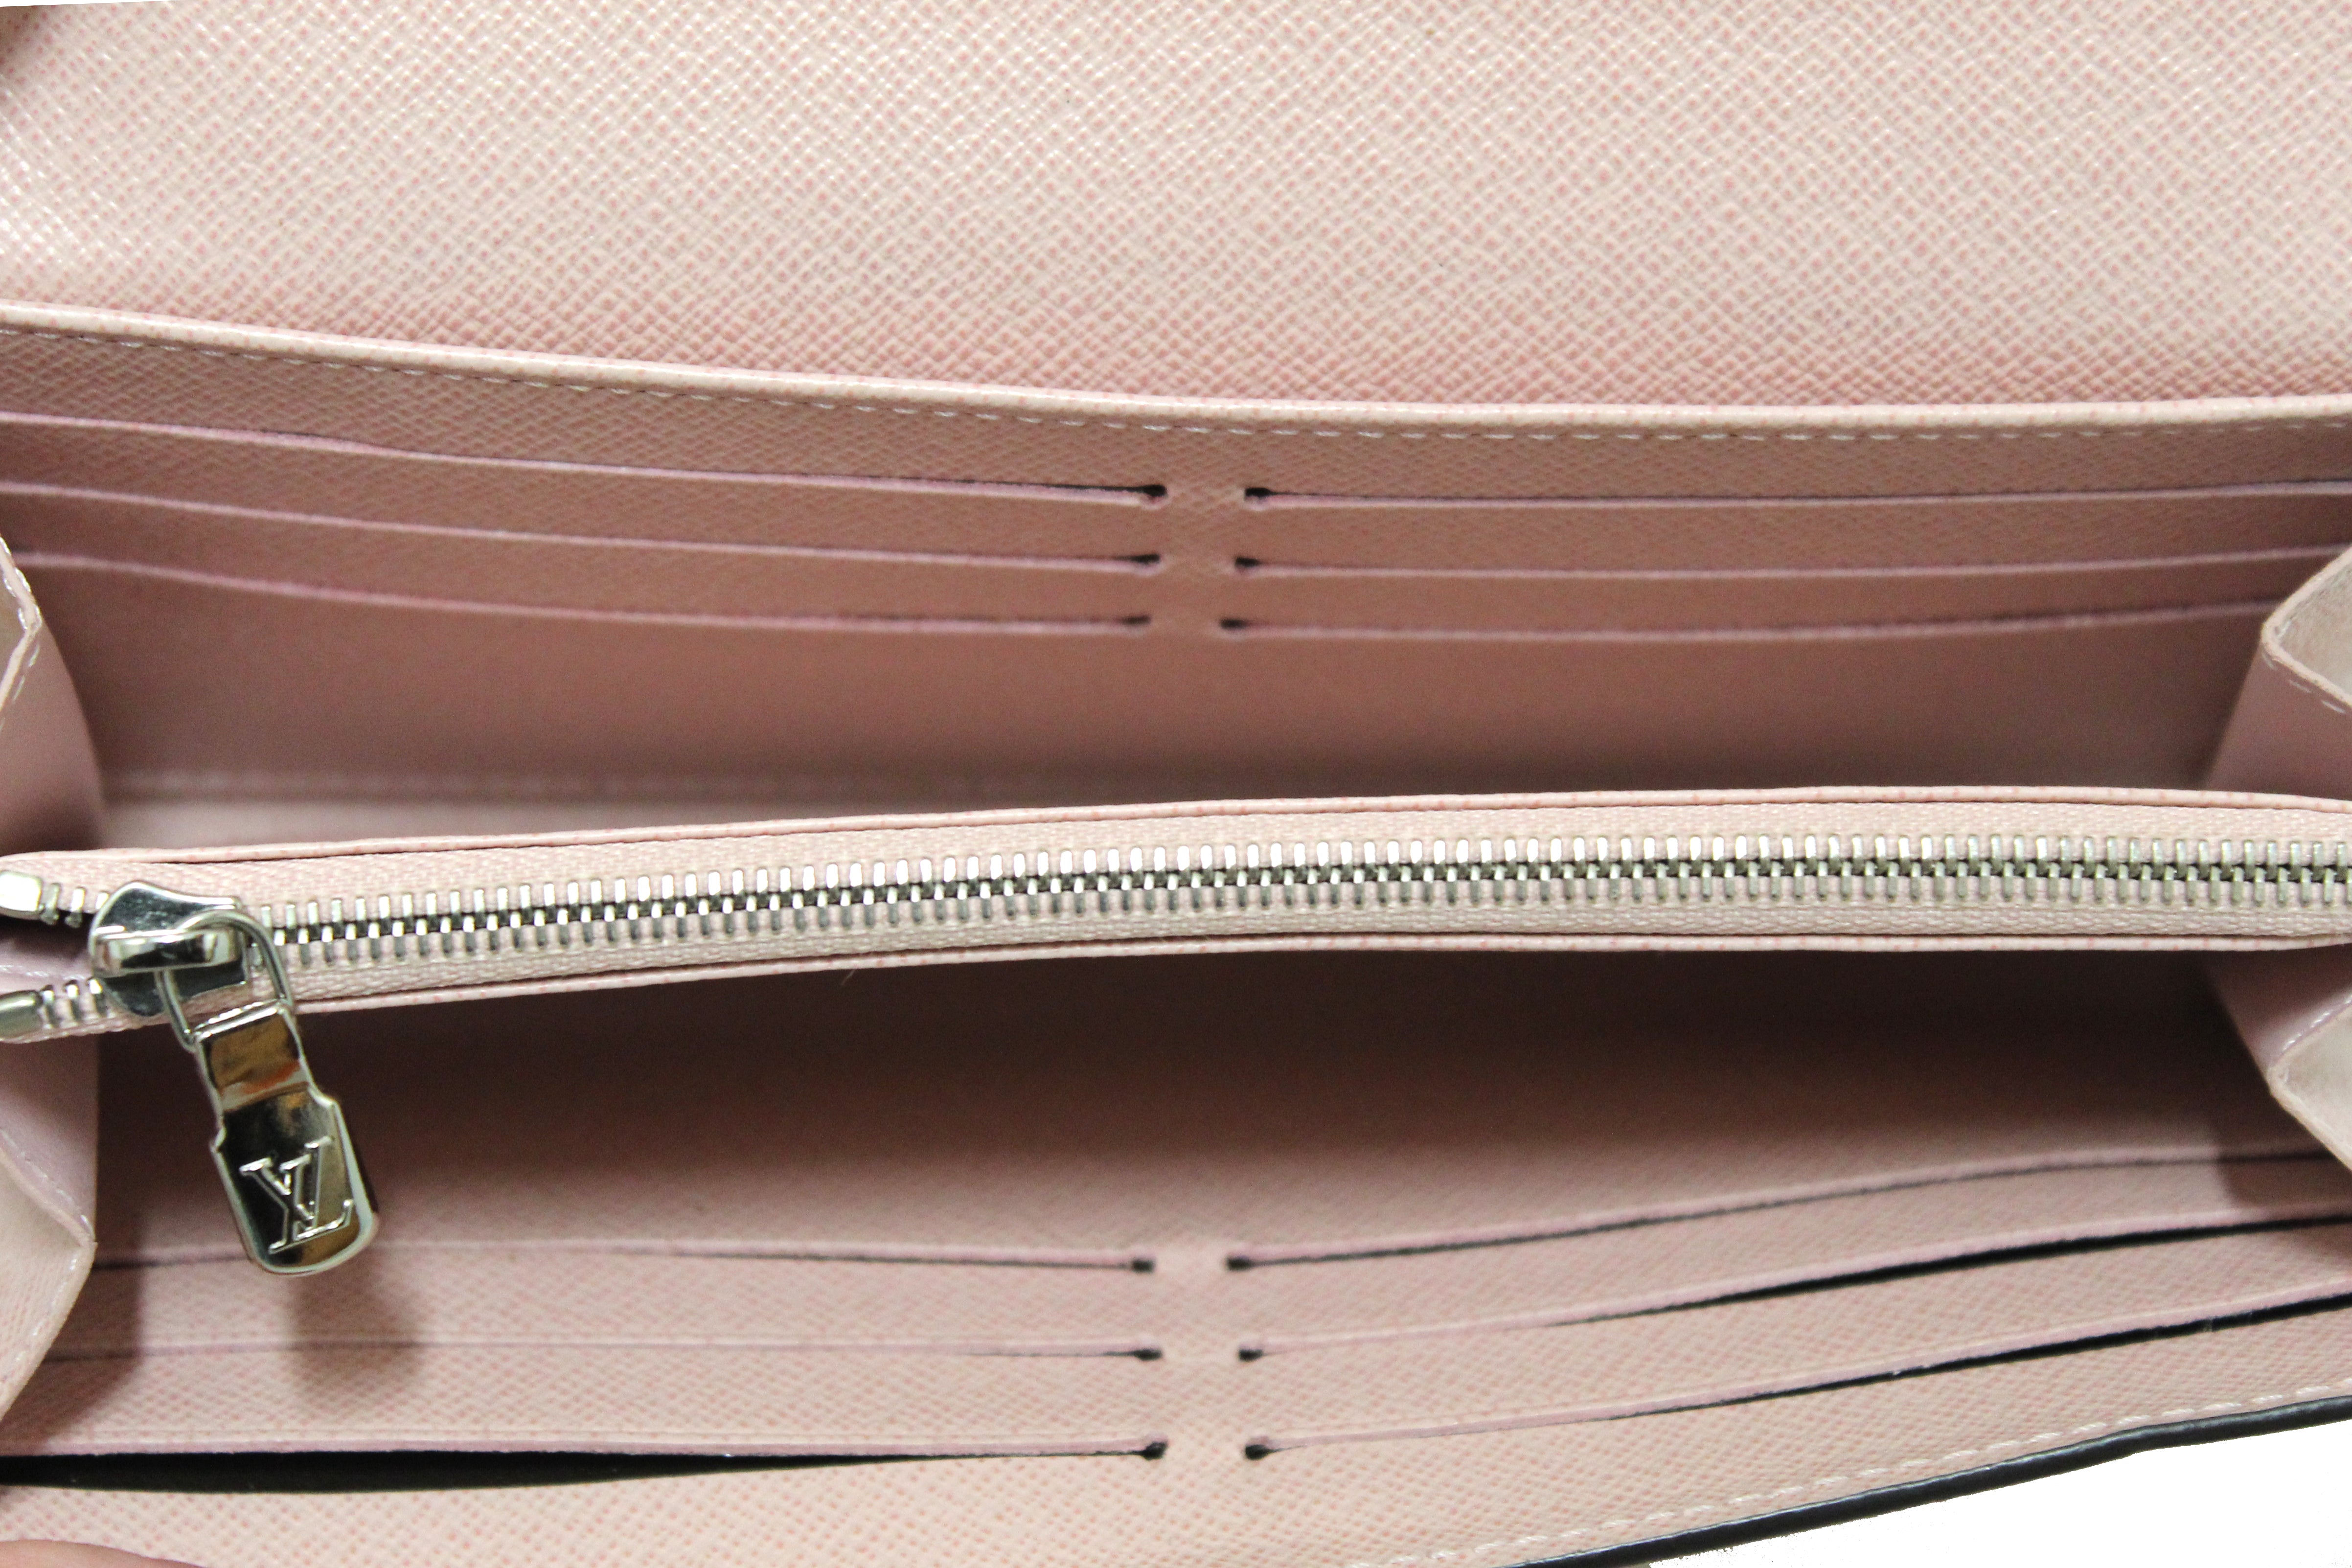 Authentic Louis Vuitton Pink Epi Leather Sarah Wallet